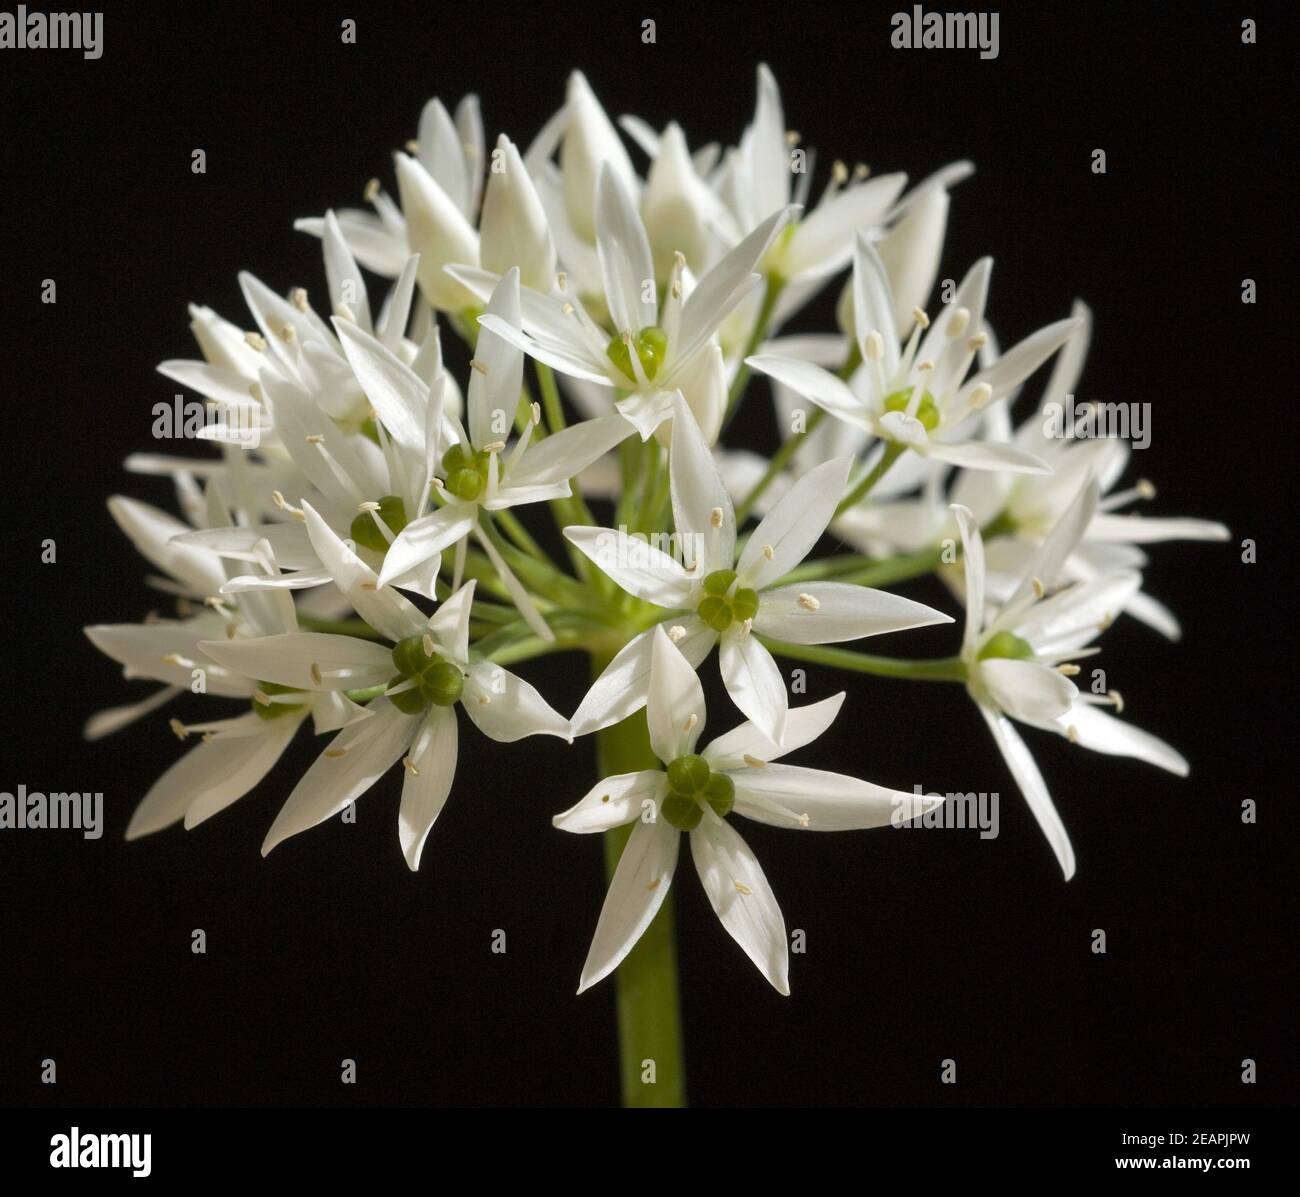 Baerlauch, Allium, ursinum, Zwiebelpflanze, Wildkraeuter, Wildgemuese, Stock Photo